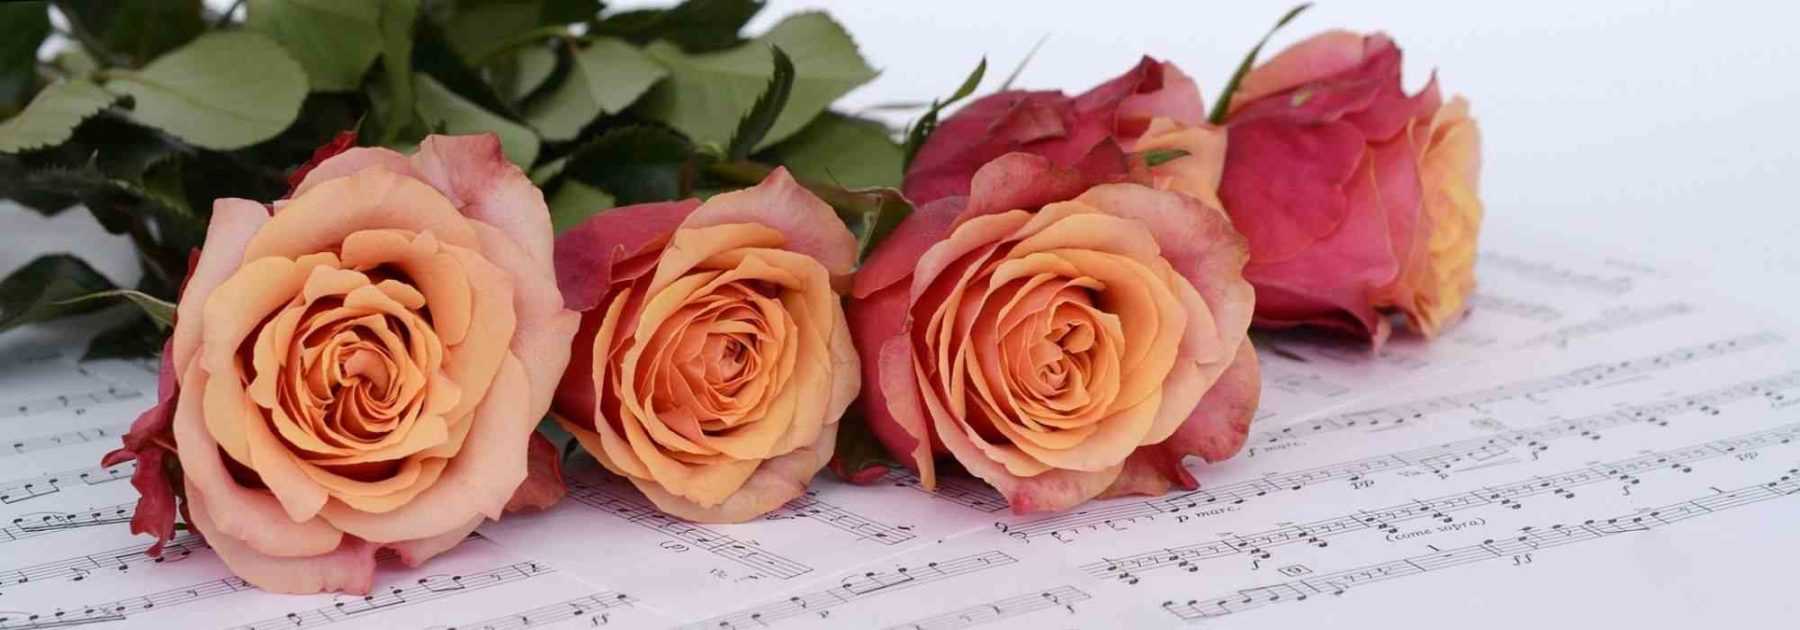 Les roses et la musique